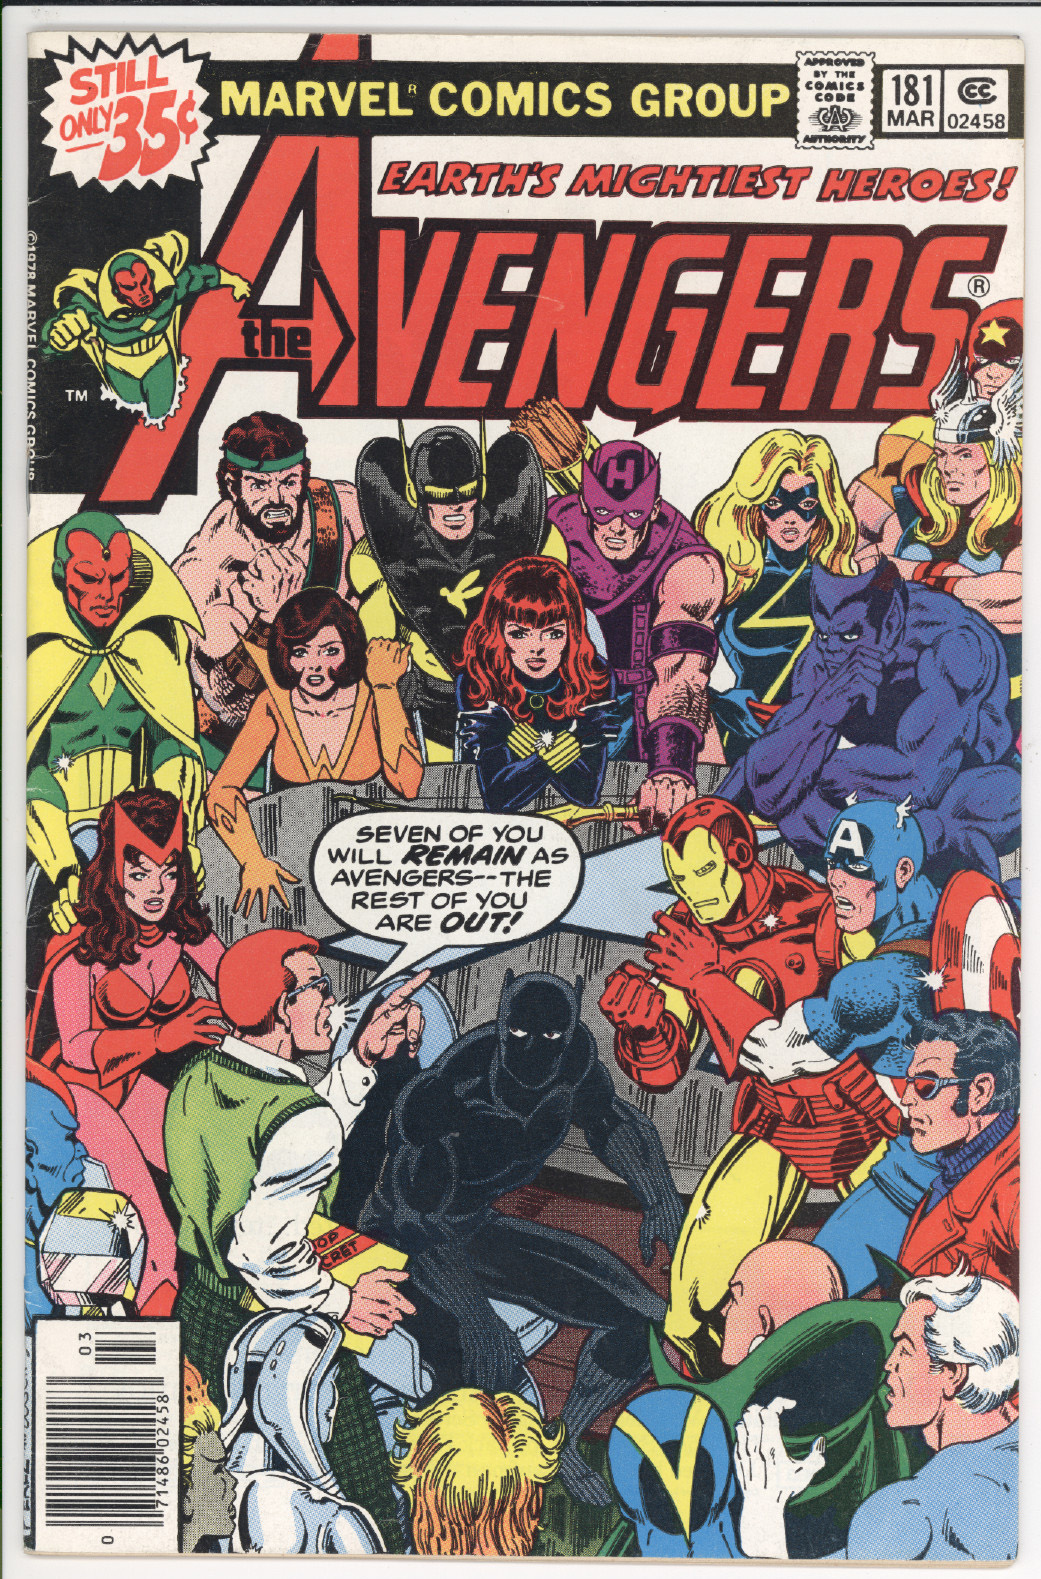 Avengers #181